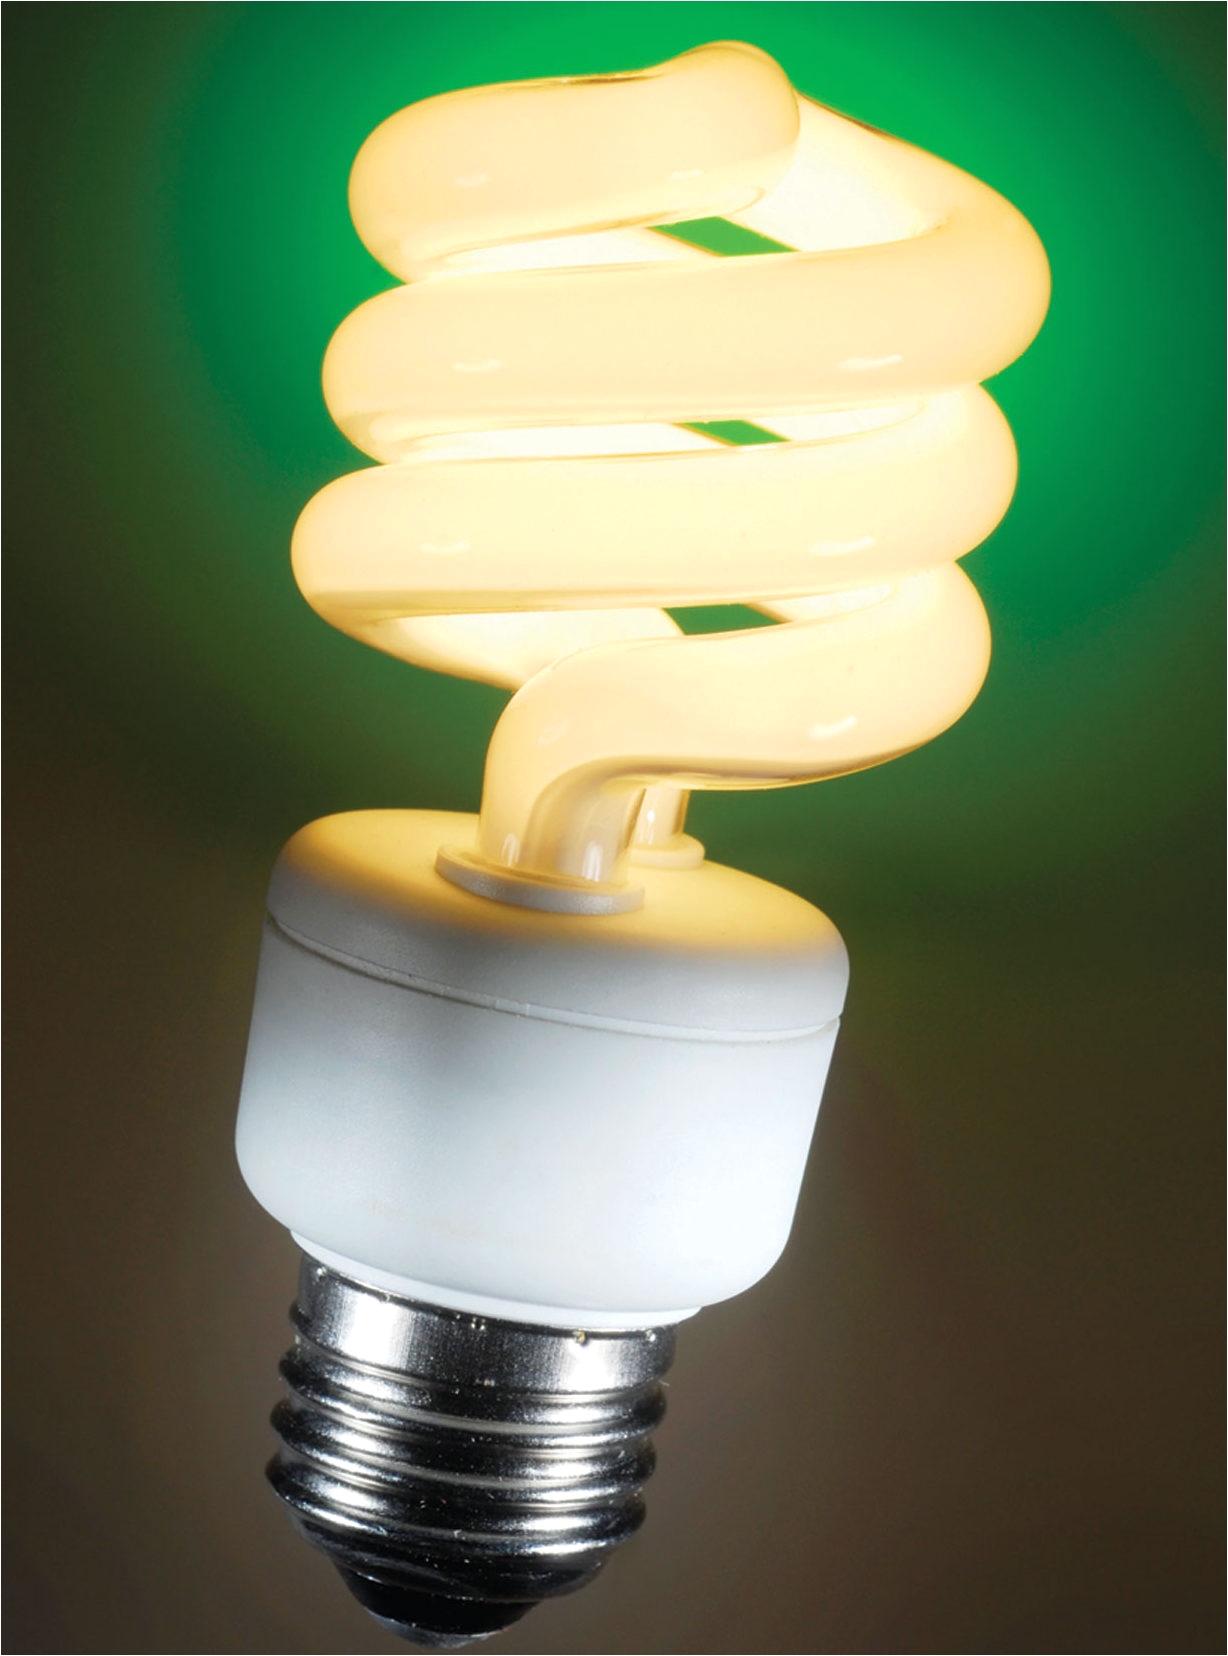 Люминесцентными лампами люминесцентные источники света. Энергосберегающие лампы 7 w 560 лм. Автогенераторная лампа люминесцентная лампа. Лампа энергосберегающая КЛЛ цветная 20/зеленая. Флуоресцентная лампа.